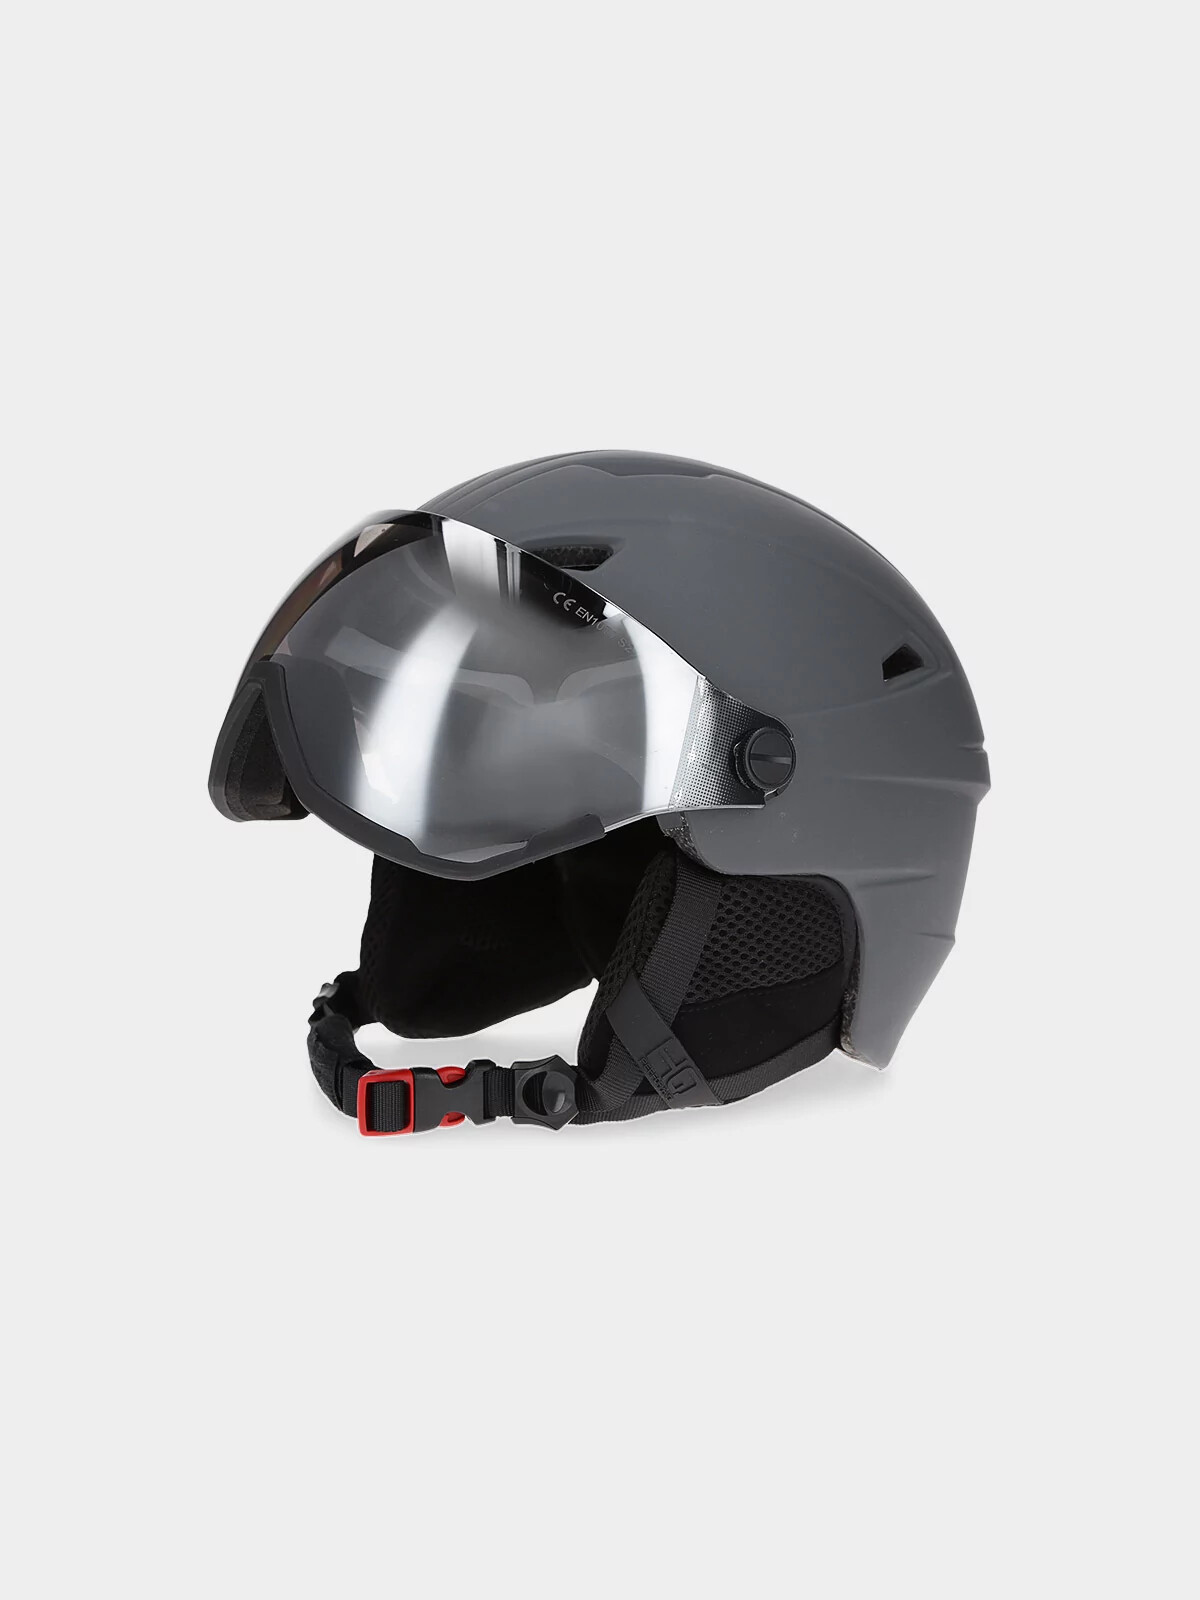 Pánská lyžařská helma s vestavěnými brýlemi 4FWAW23AHELM034-25S šedá - 4F L/XL (55-59 cm)